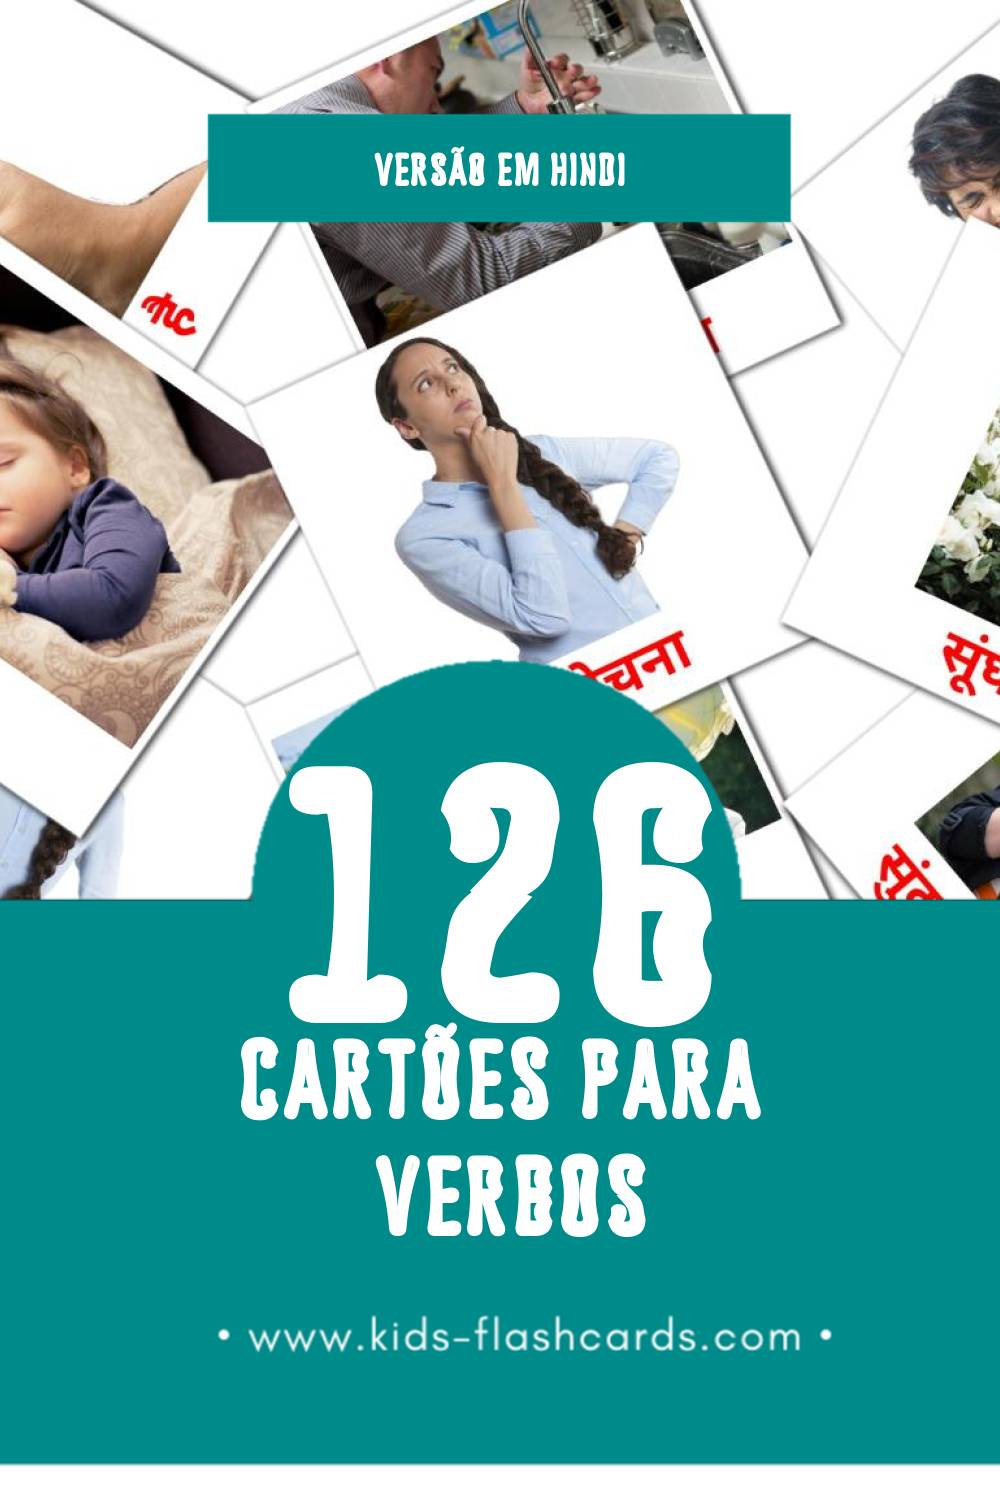 Flashcards de क्रियाएं Visuais para Toddlers (126 cartões em Hindi)